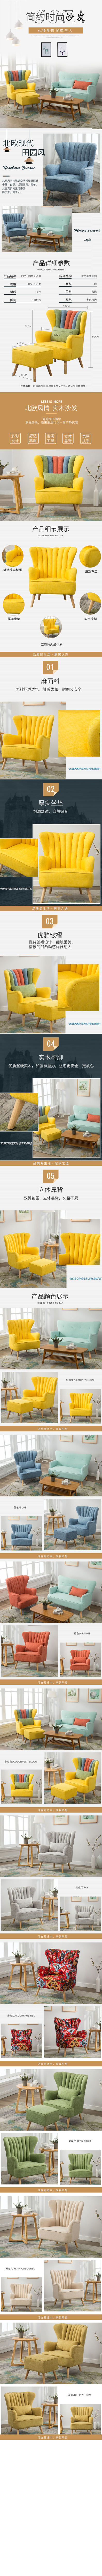 淘宝美工向阳花现代简约单人沙发时尚创意小户型卧室沙发北欧风格休闲懒人椅作品